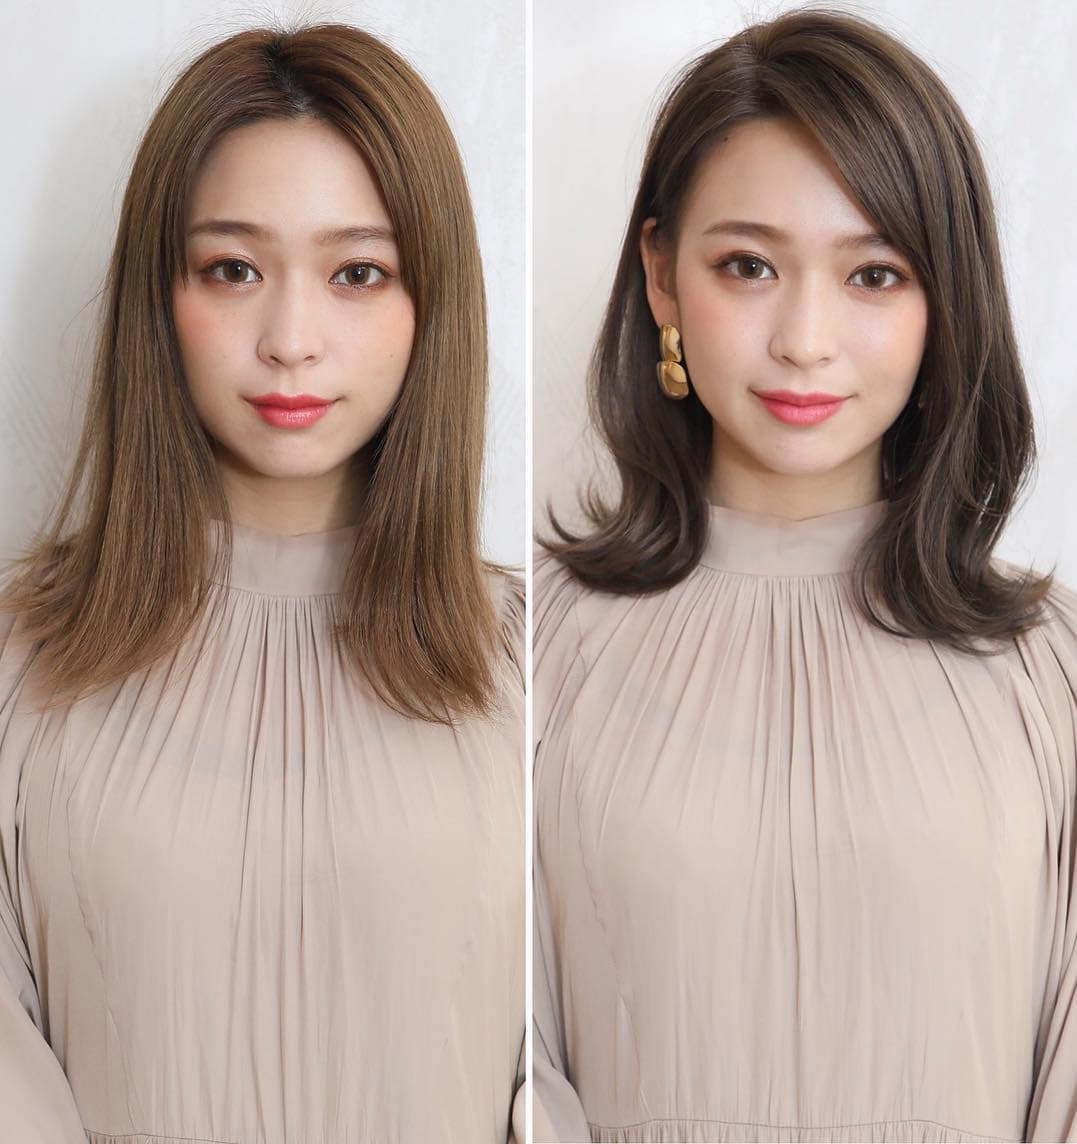 18 работ от парикмахера из Японии, который меняет своих клиенток с помощью правильной стрижки и укладки 55